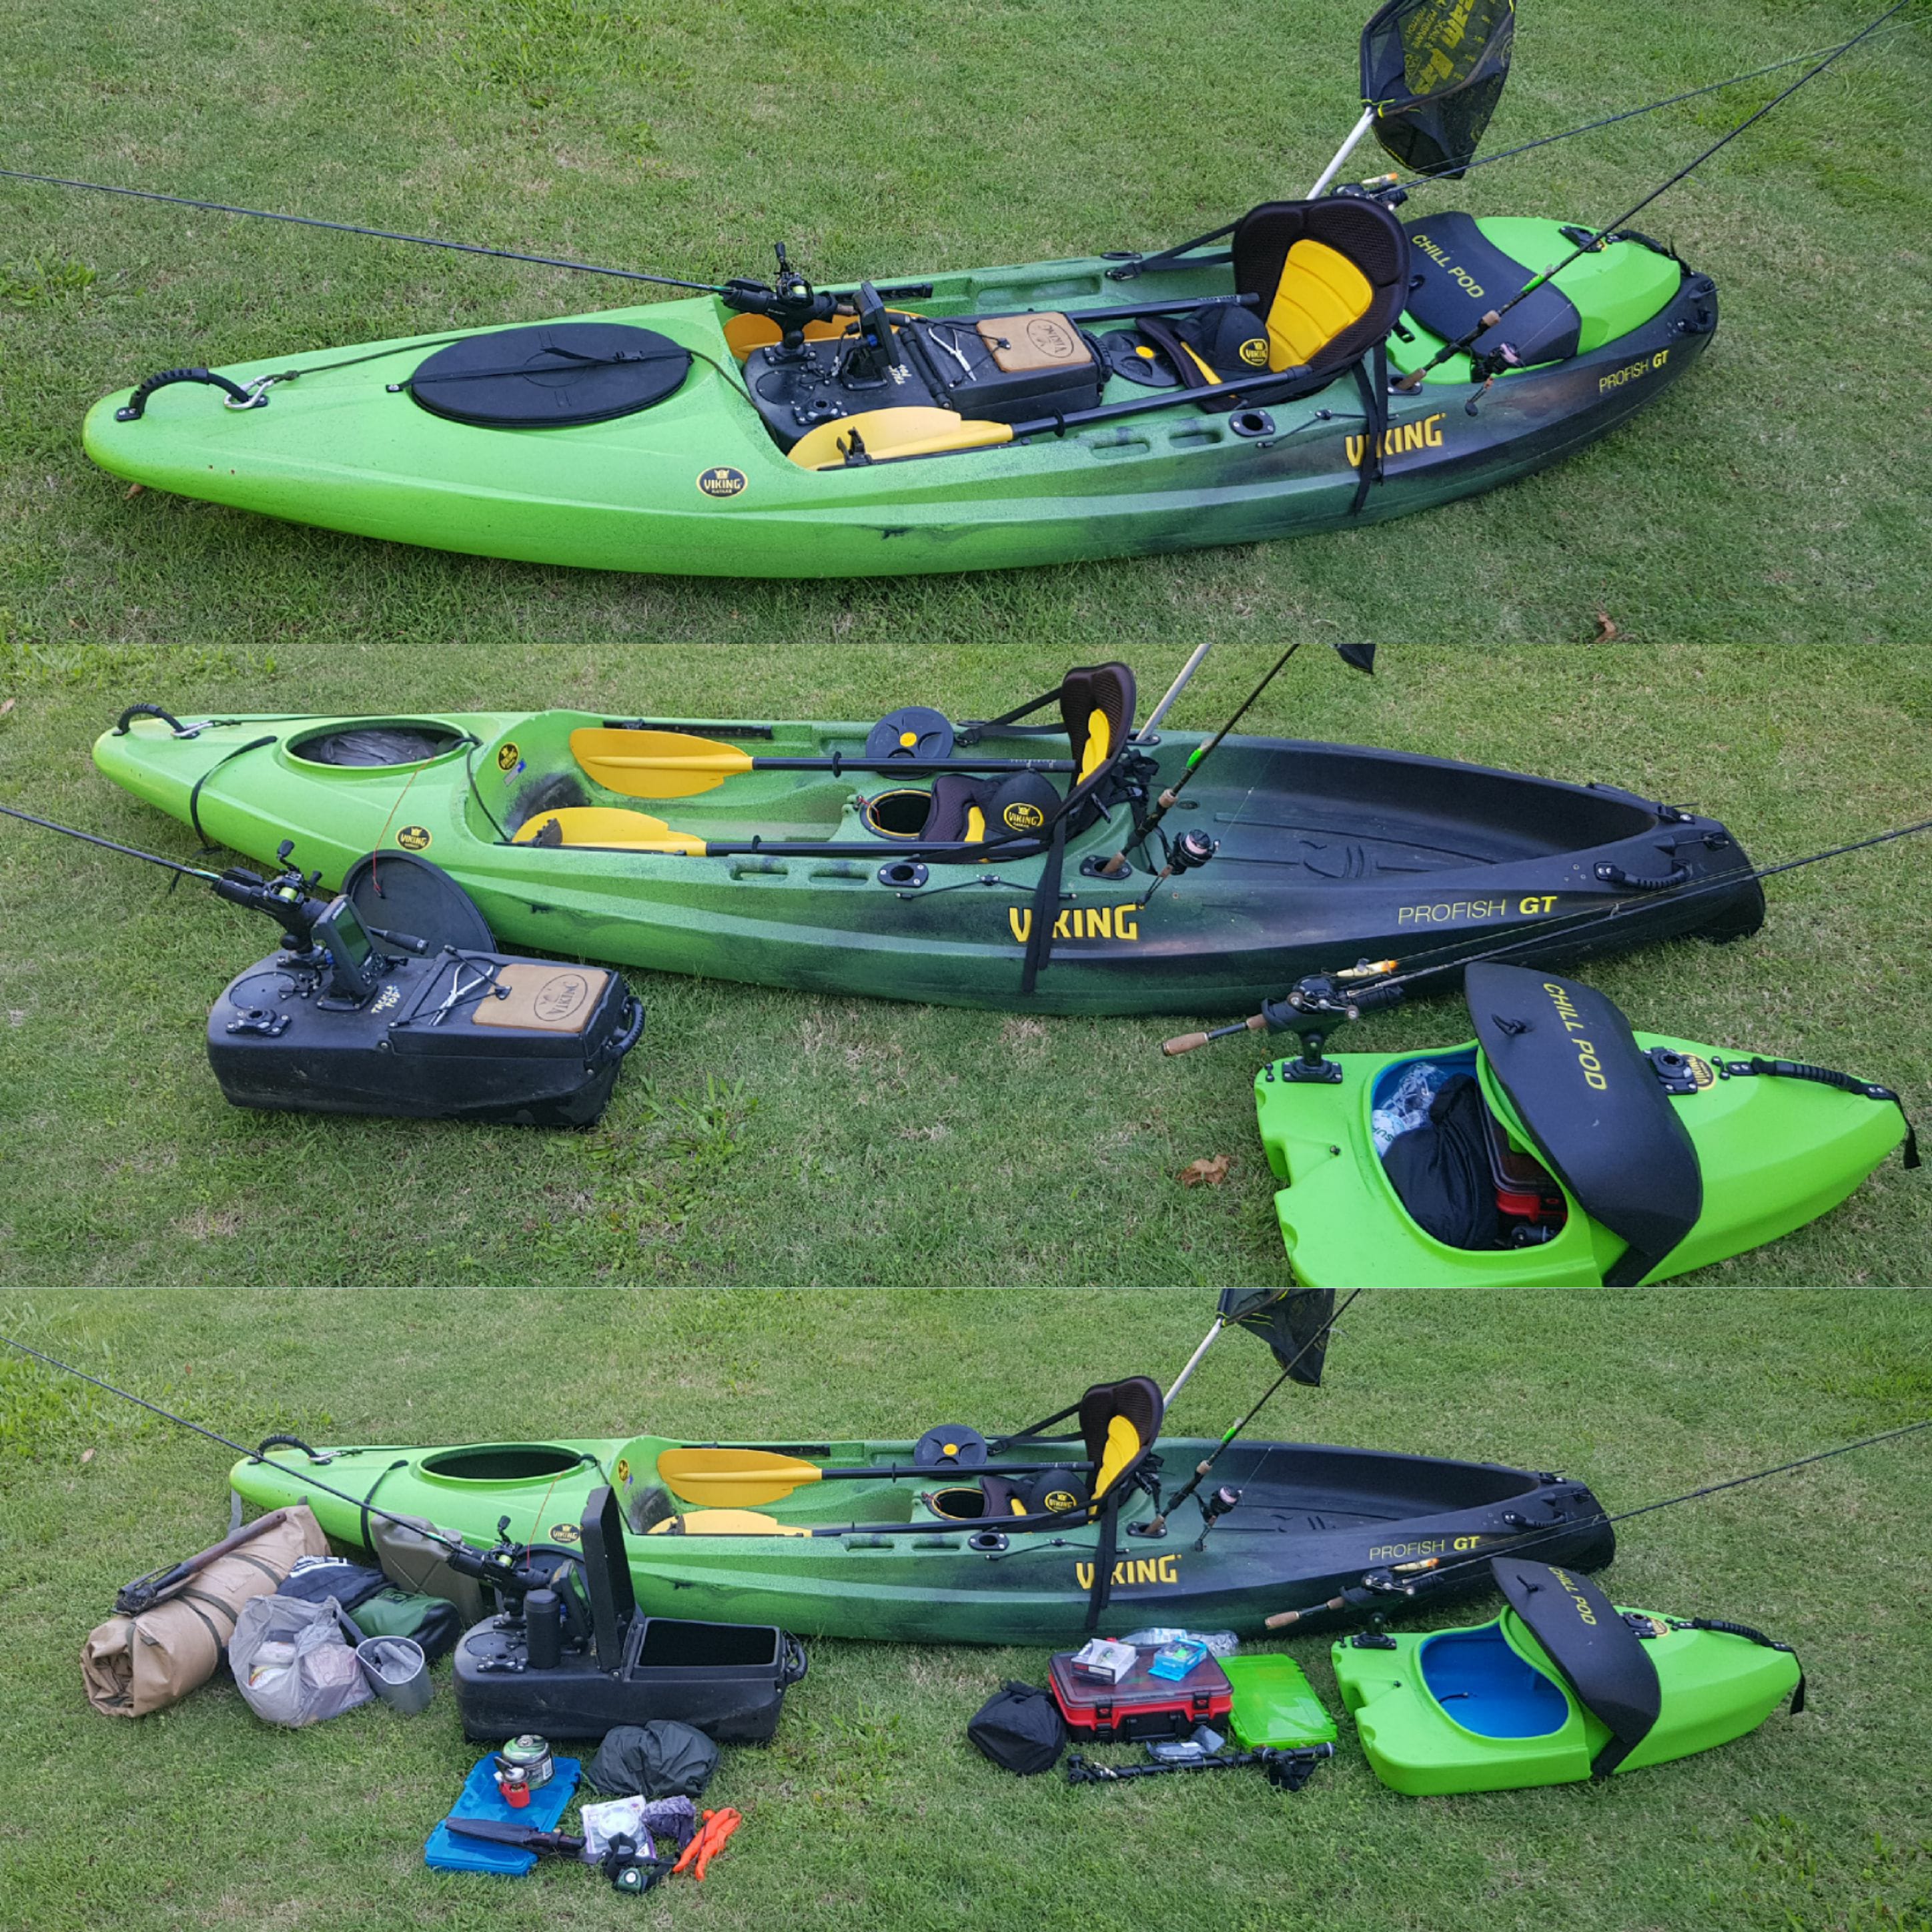 Viking Kayaks - NZ - Kayak fishing & Camping - Get away from it all